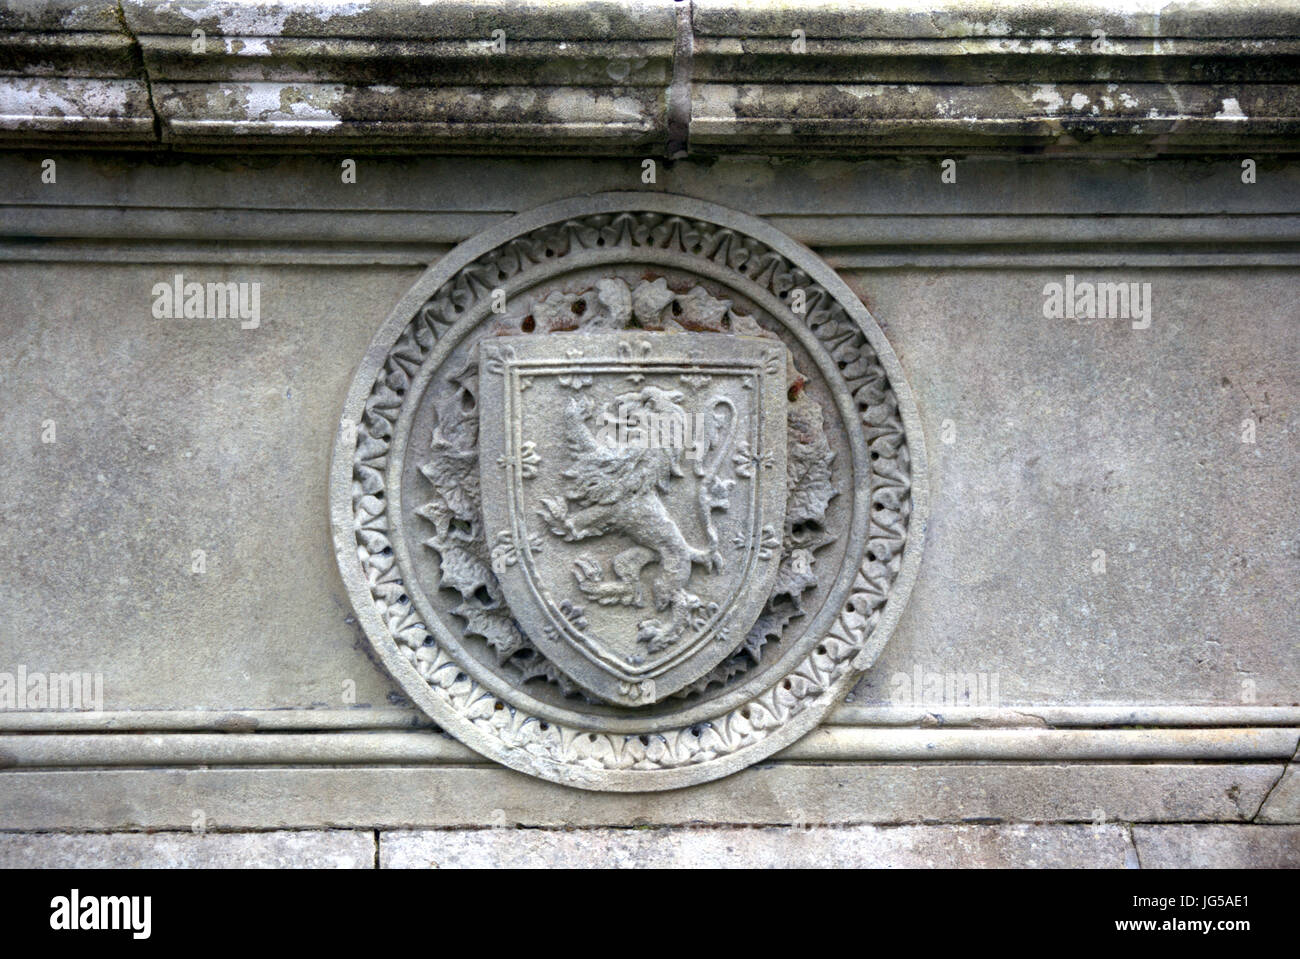 Lion rampant sur un bouclier symbole royal d'Écosse, sculptées en relief en pierre grise du côté de la fontaine dans le parc Kelvingrove Banque D'Images